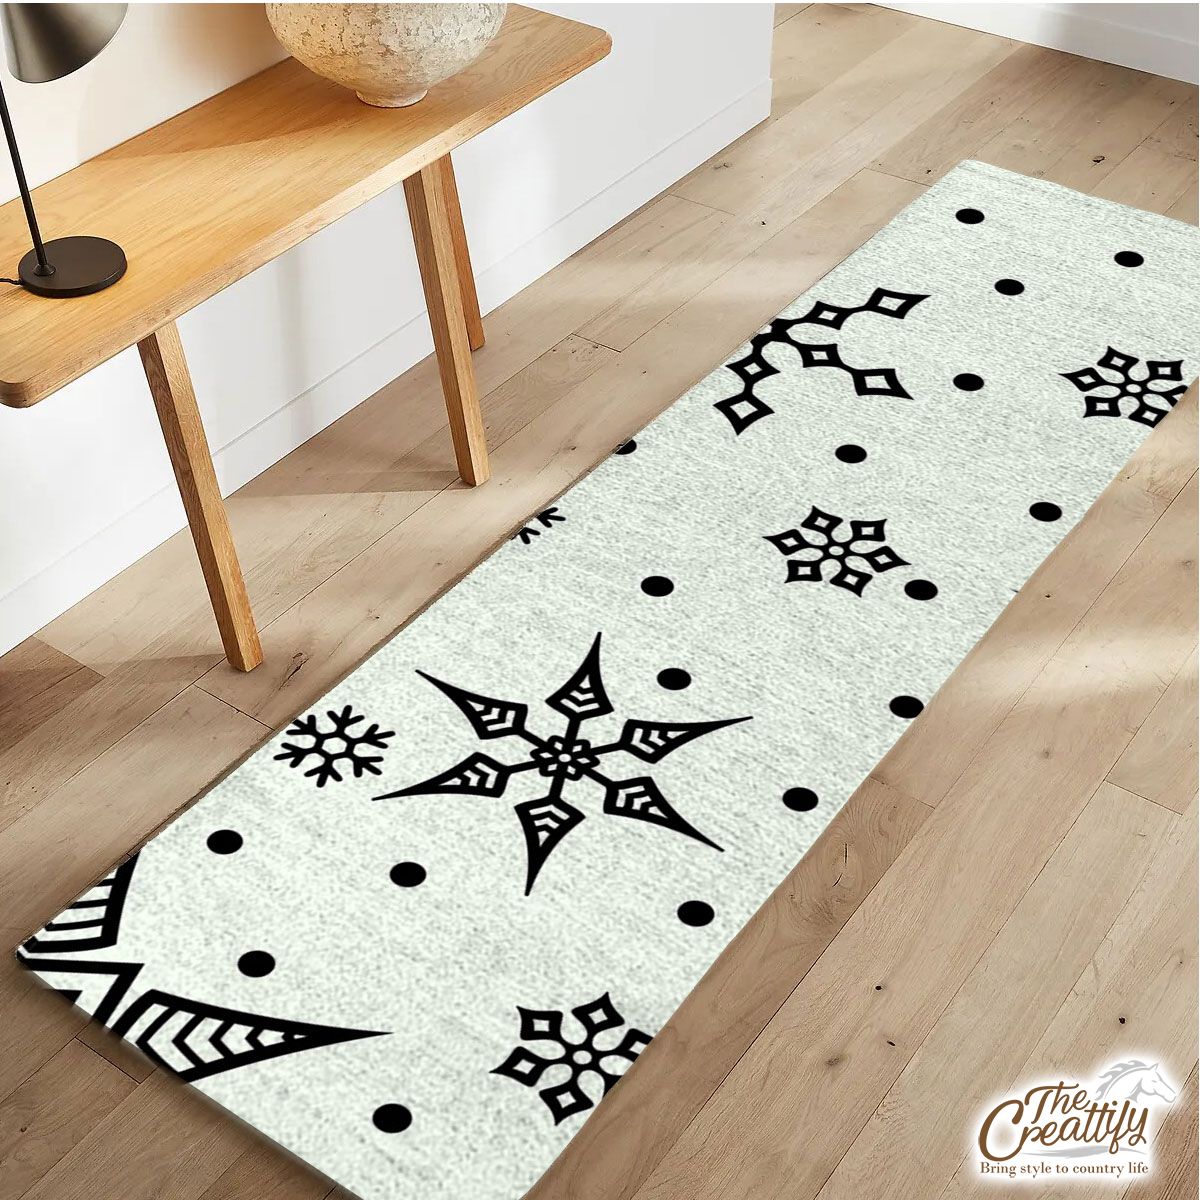 Black And White Snowflake Christmas Runner Carpet